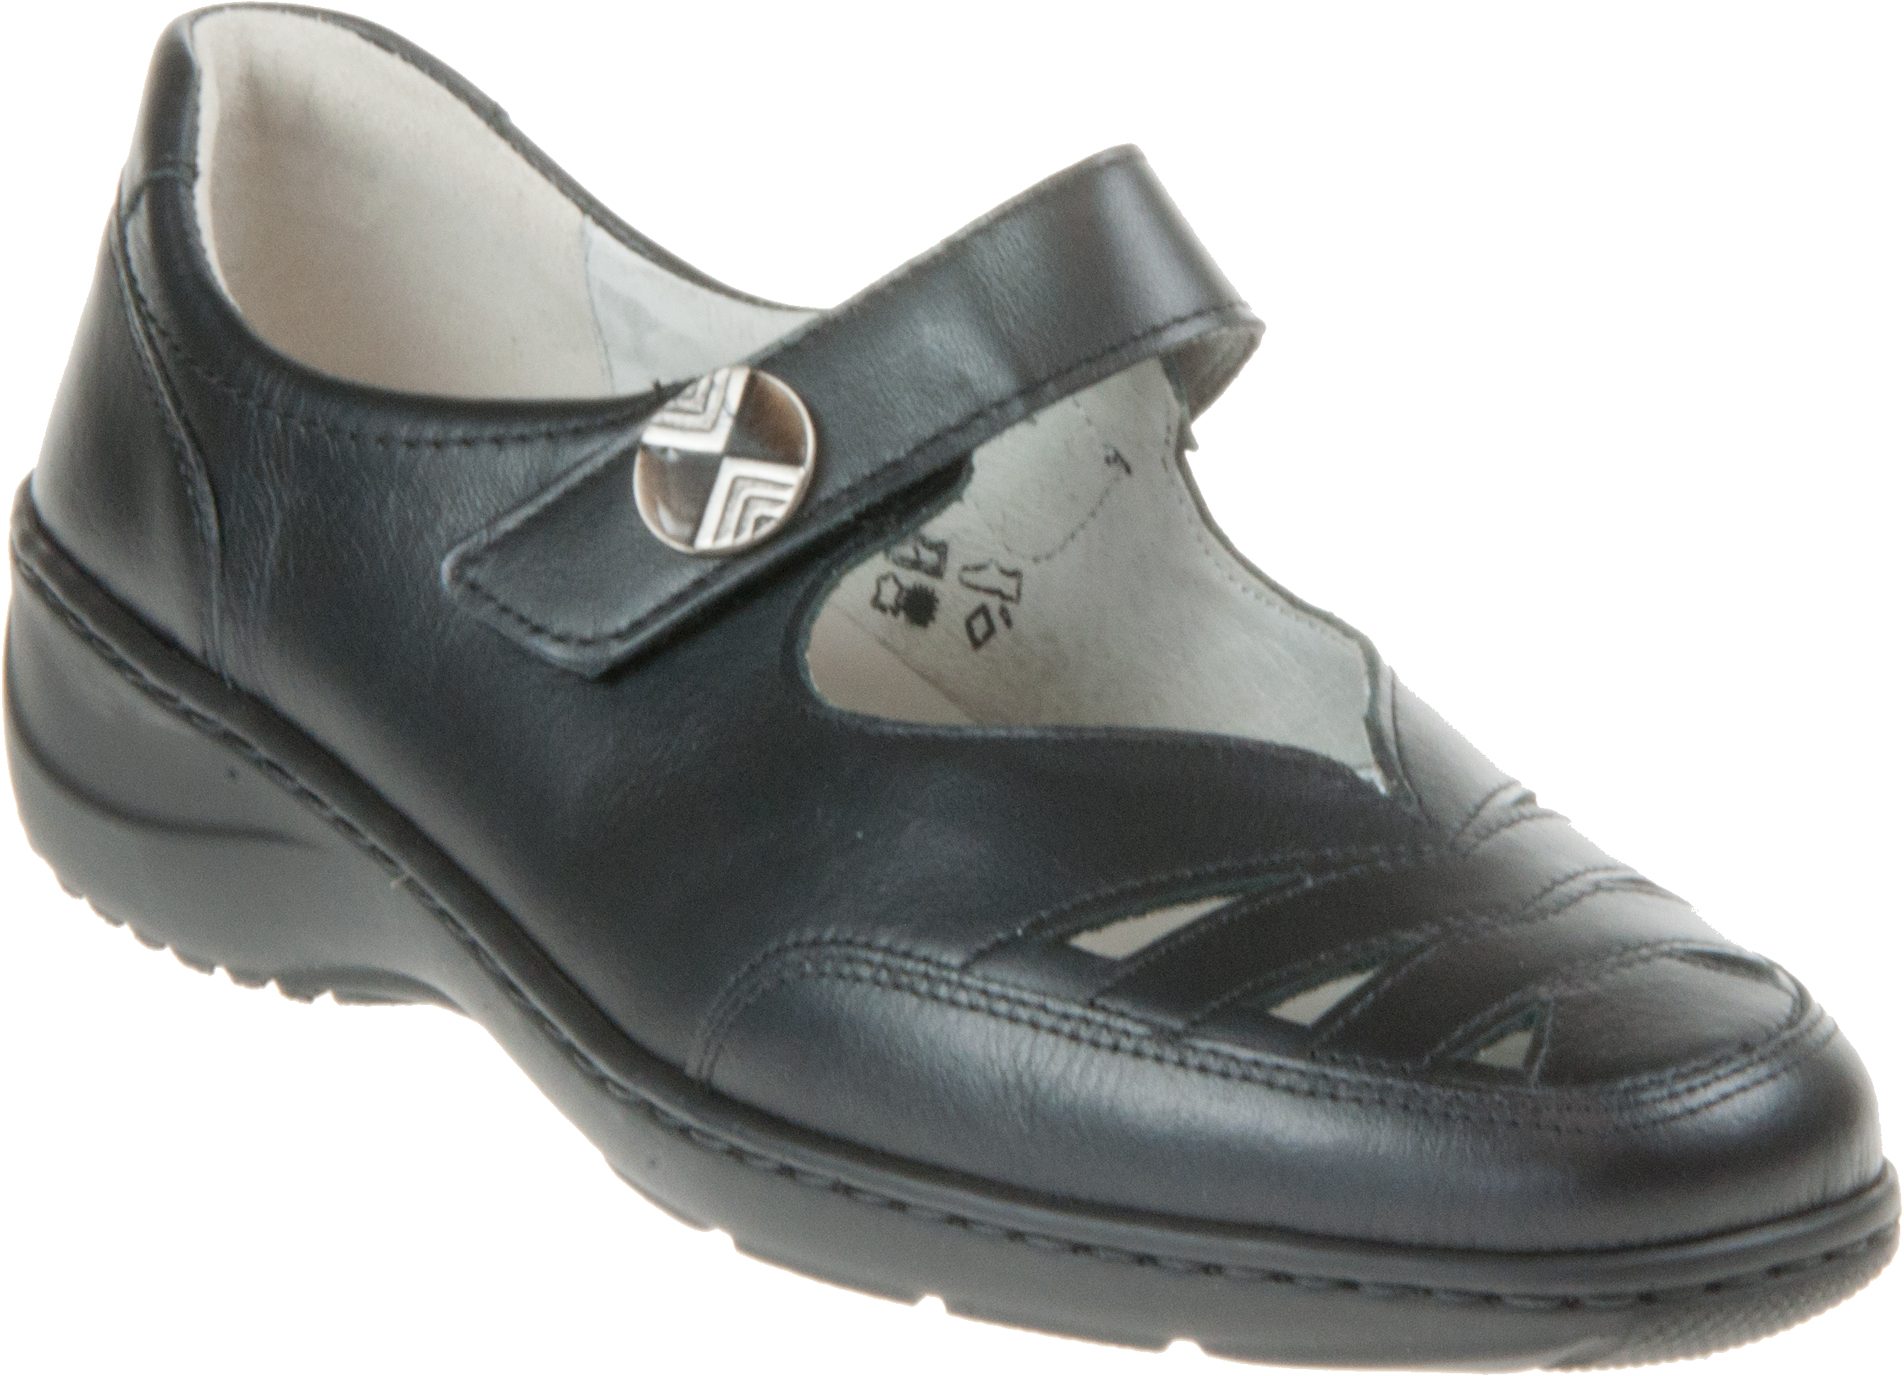 Waldlaufer Kya 309 Black Leather 607309 186 001 - Everyday Shoes ...